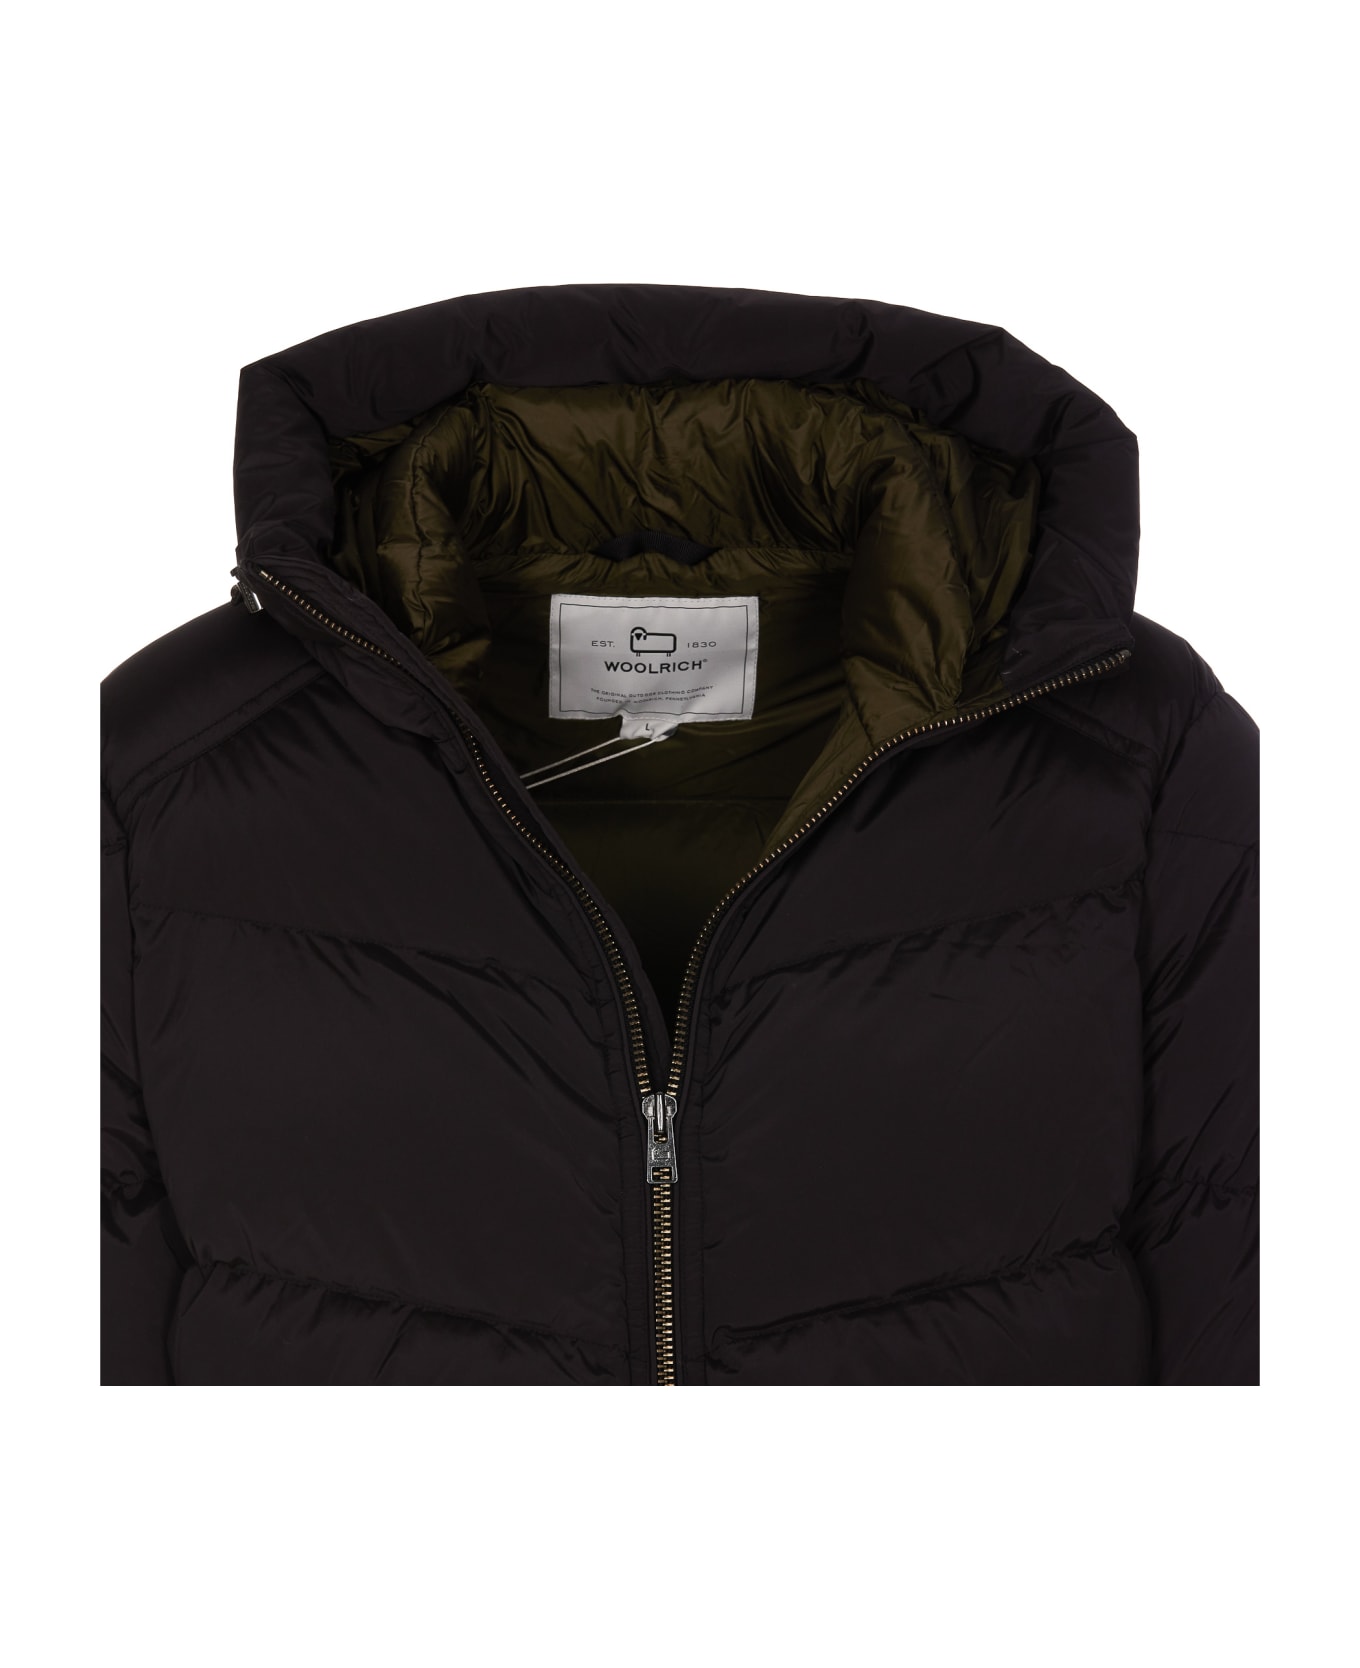 Woolrich Premium Down Jacket - Black ジャケット